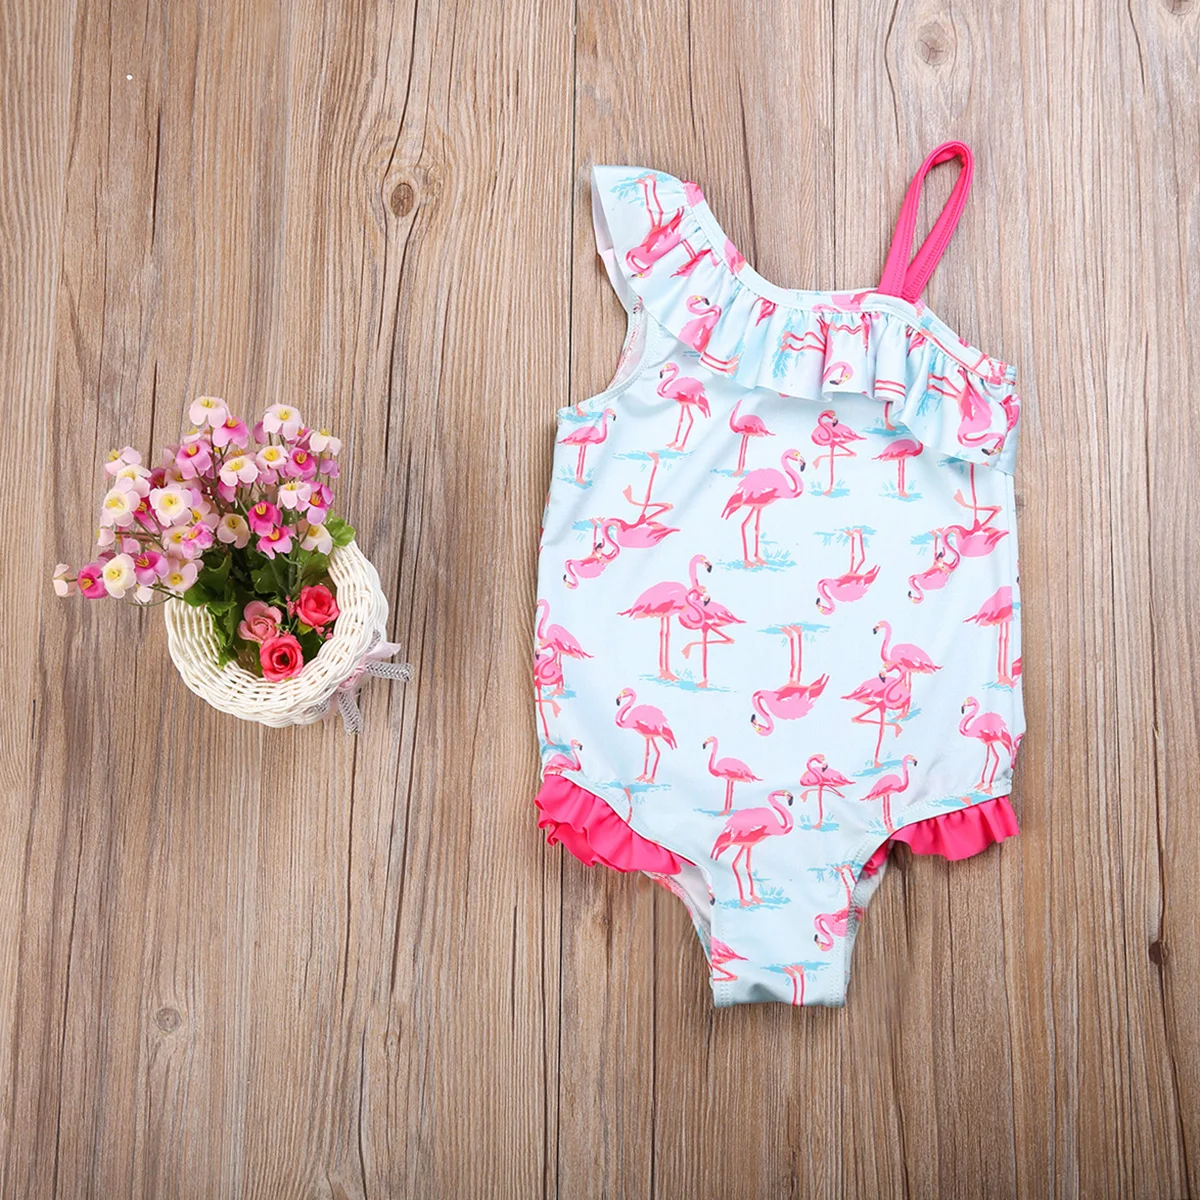 HIRIGIN/брендовый купальник-бикини для маленьких девочек с изображением фламинго, купальный костюм, купальный костюм, пляжная одежда, От 2 до 7 лет